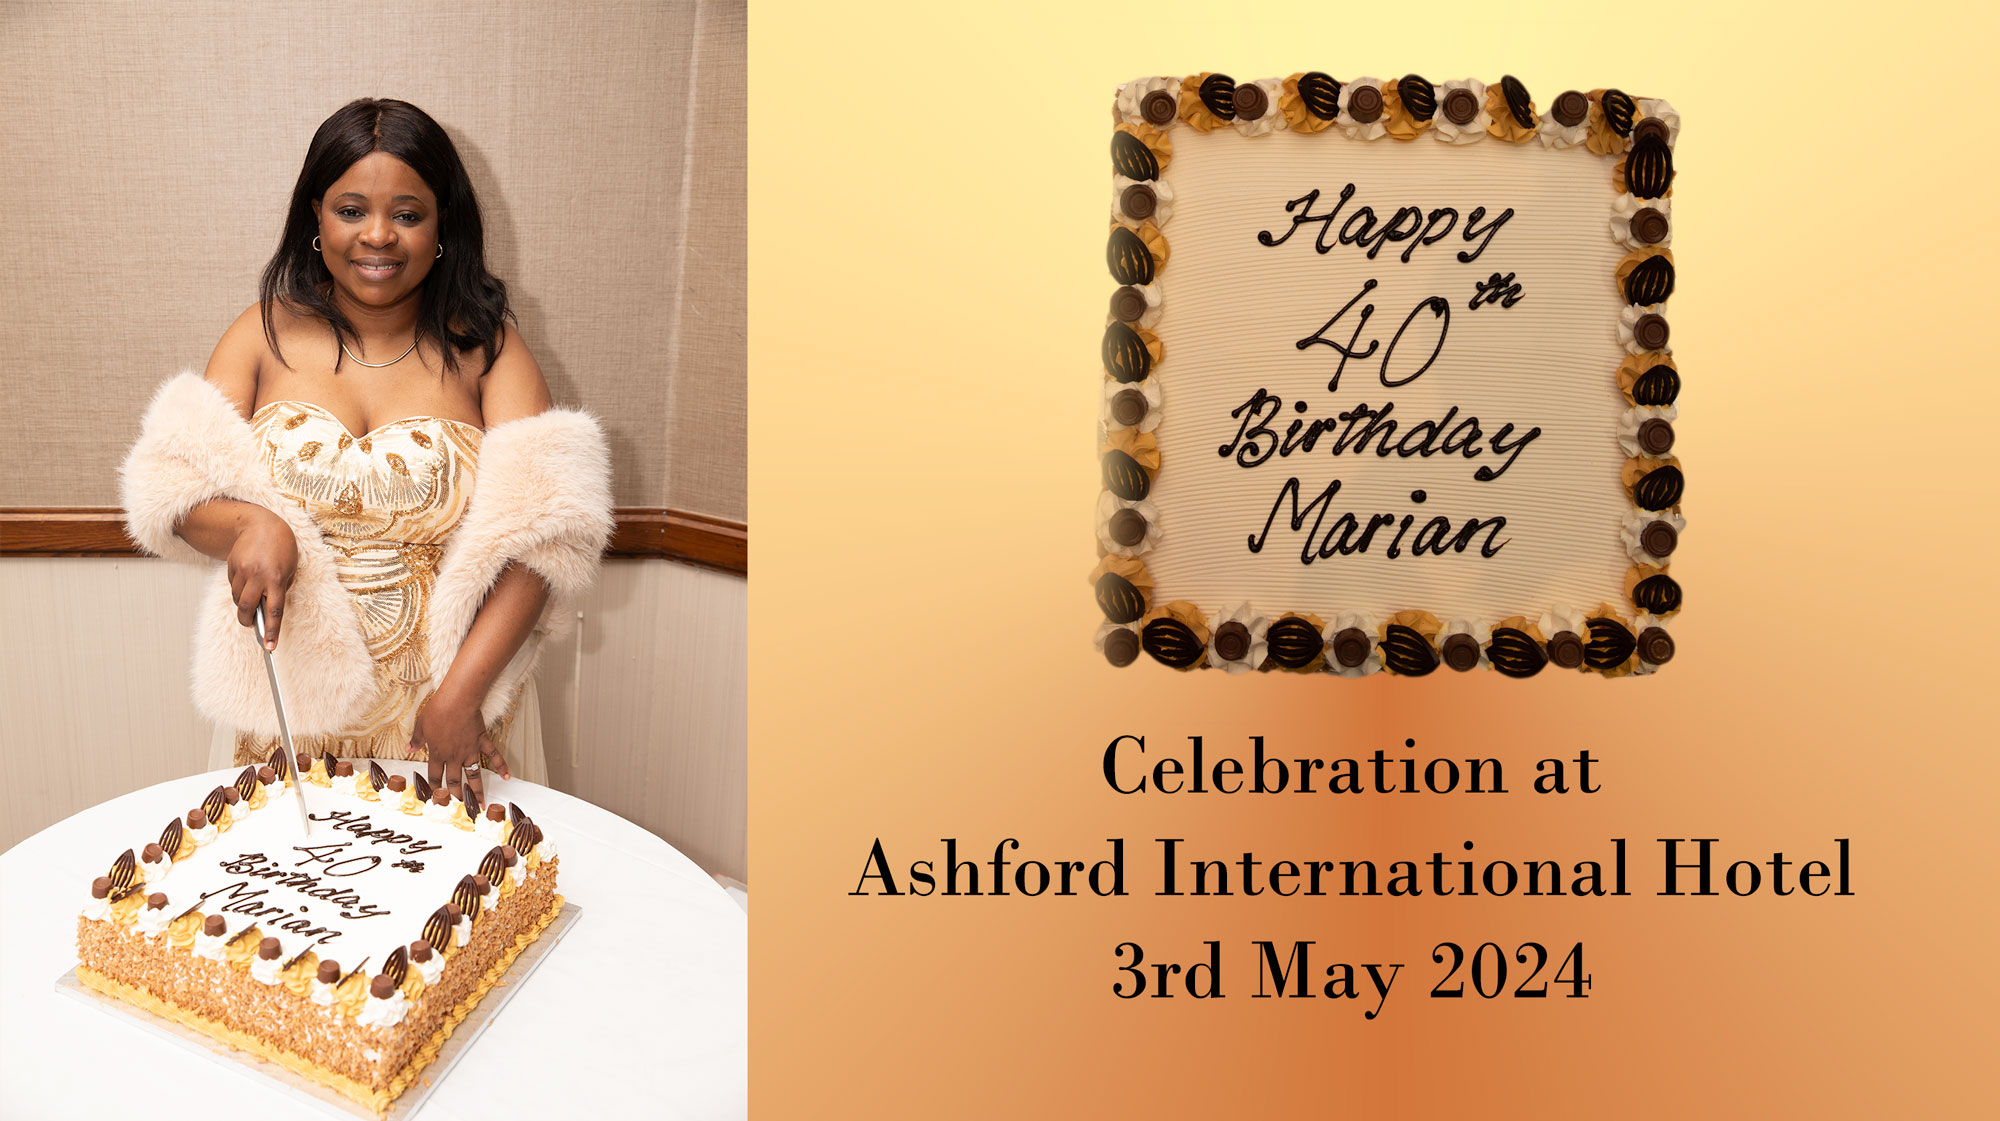 Marian Chingozho 40th Birthday celebration